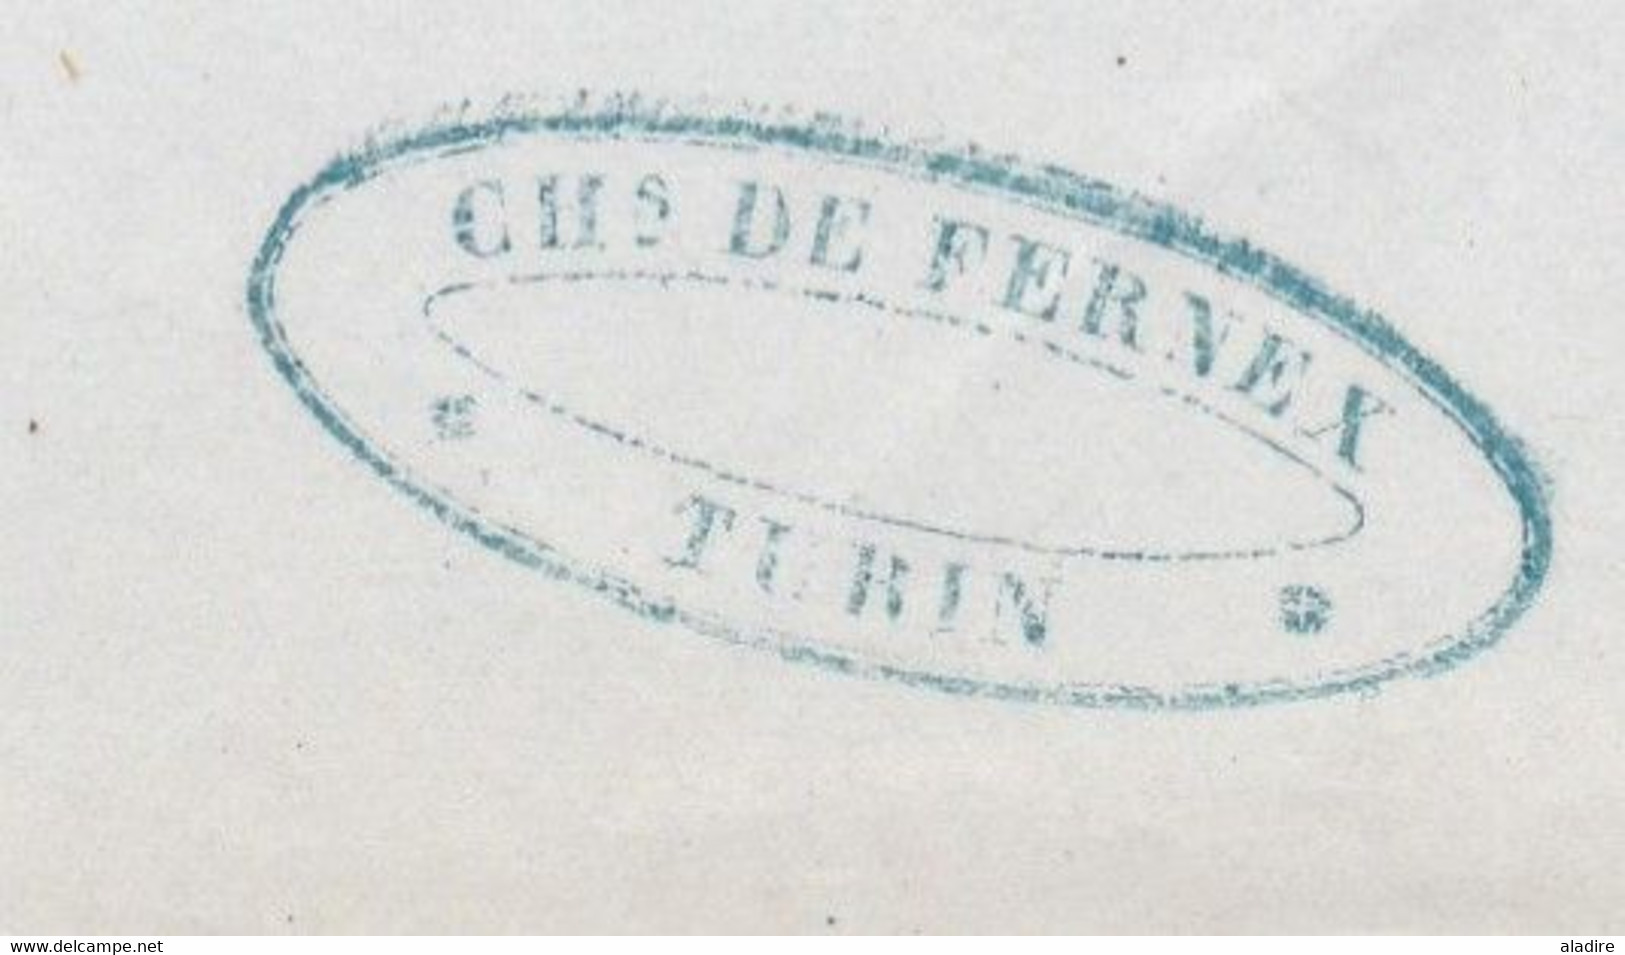 1852 - Lettre pliée avec correspondance de Torino vers Grenoble, France - entrée Pont de Beauvoisin